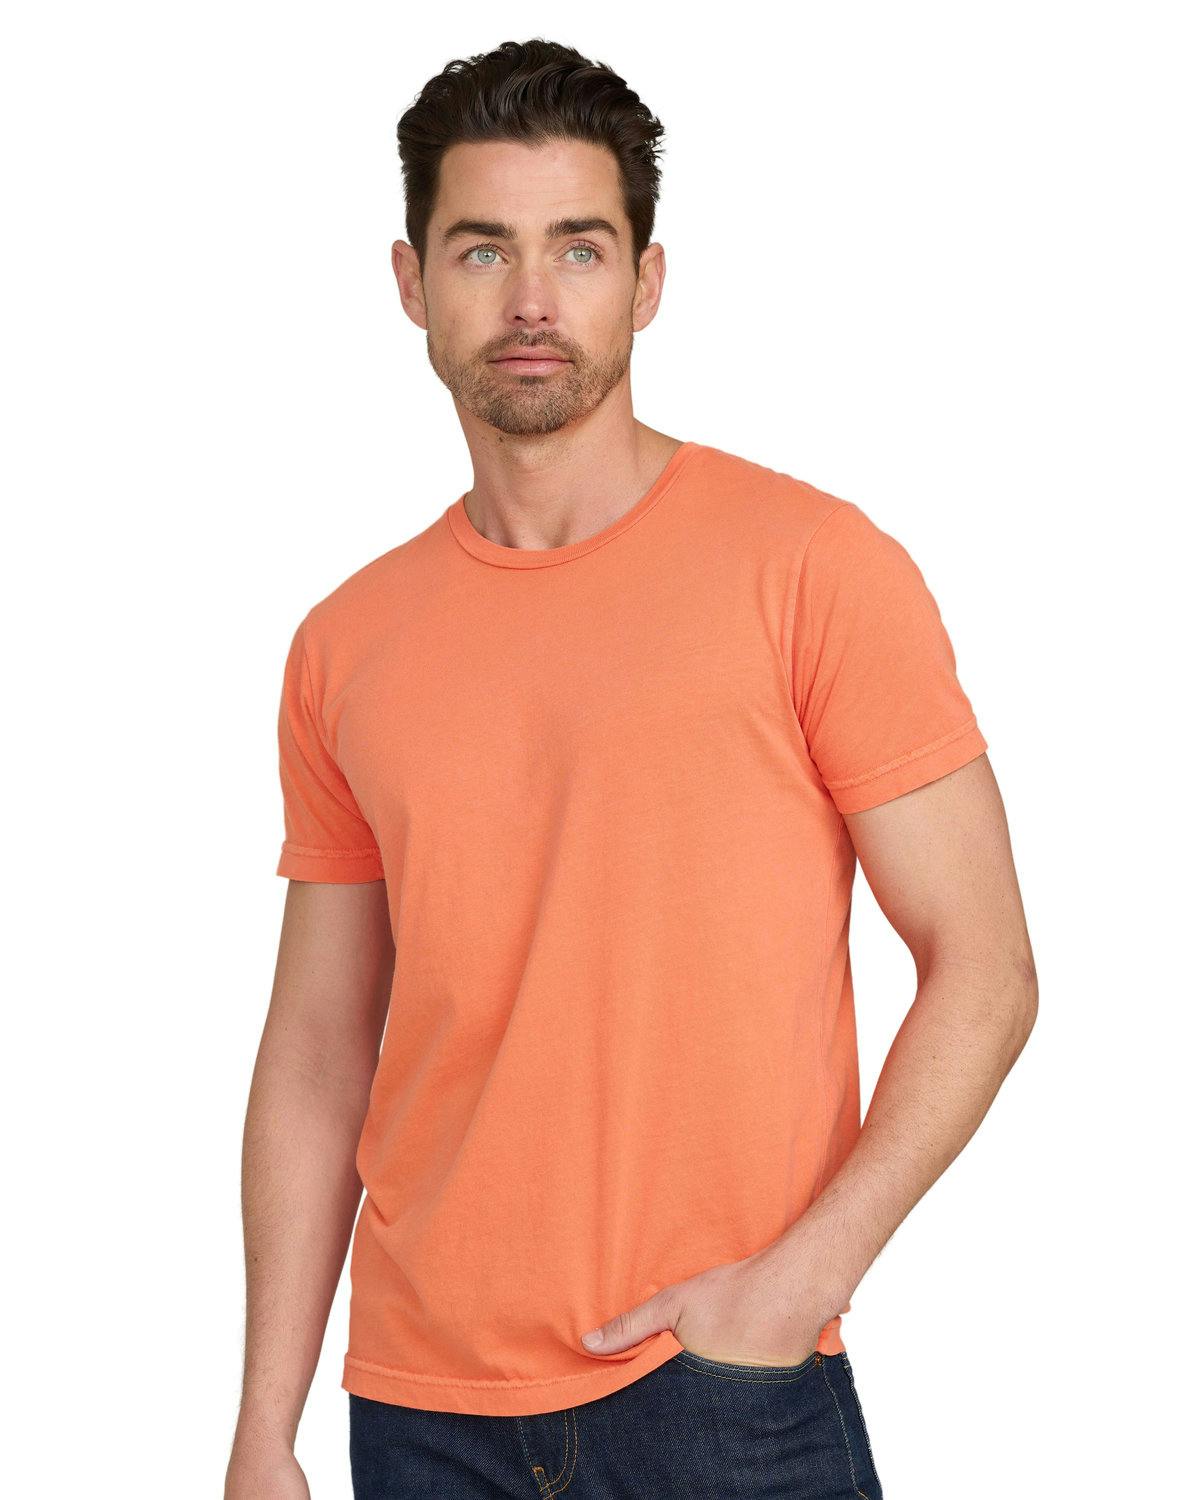 Image for Unisex 3.8 oz. Short-Sleeve Garment-Dyed Crewneck